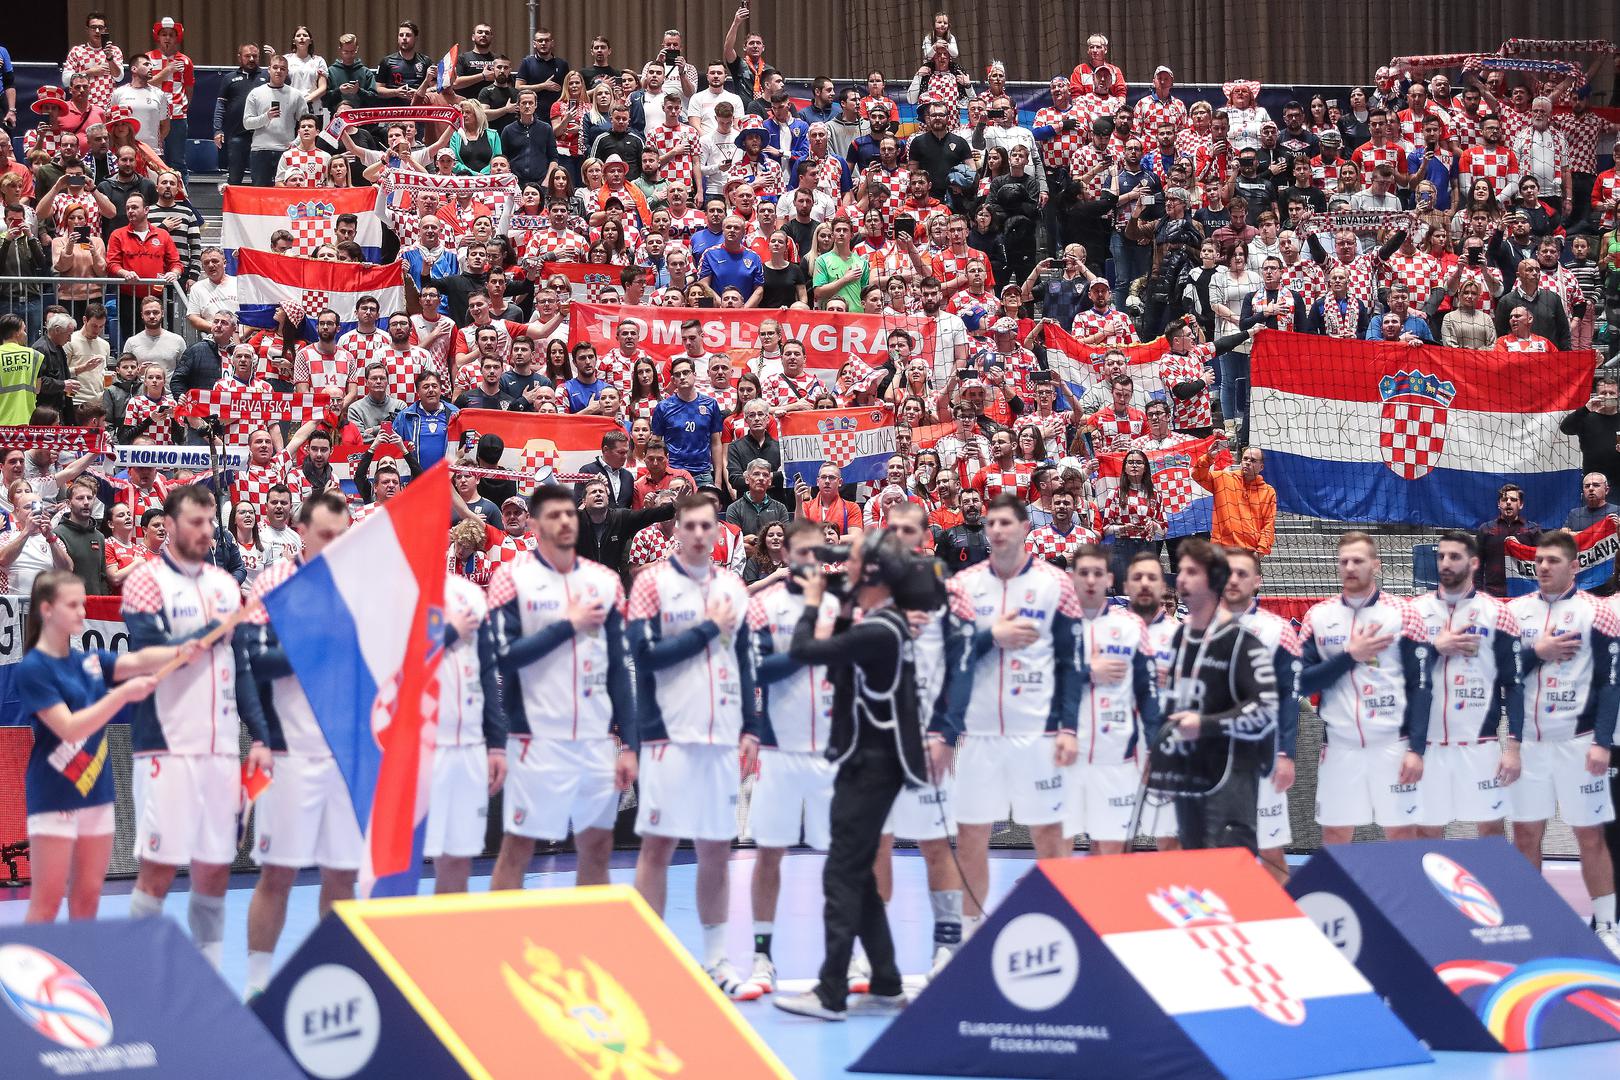 S tribina Stadthalle arene se orilo "Mi, Hrvati", "U boj, u boj", a hrvatski navijači skandirali su i "Vukovar, Vukovar"